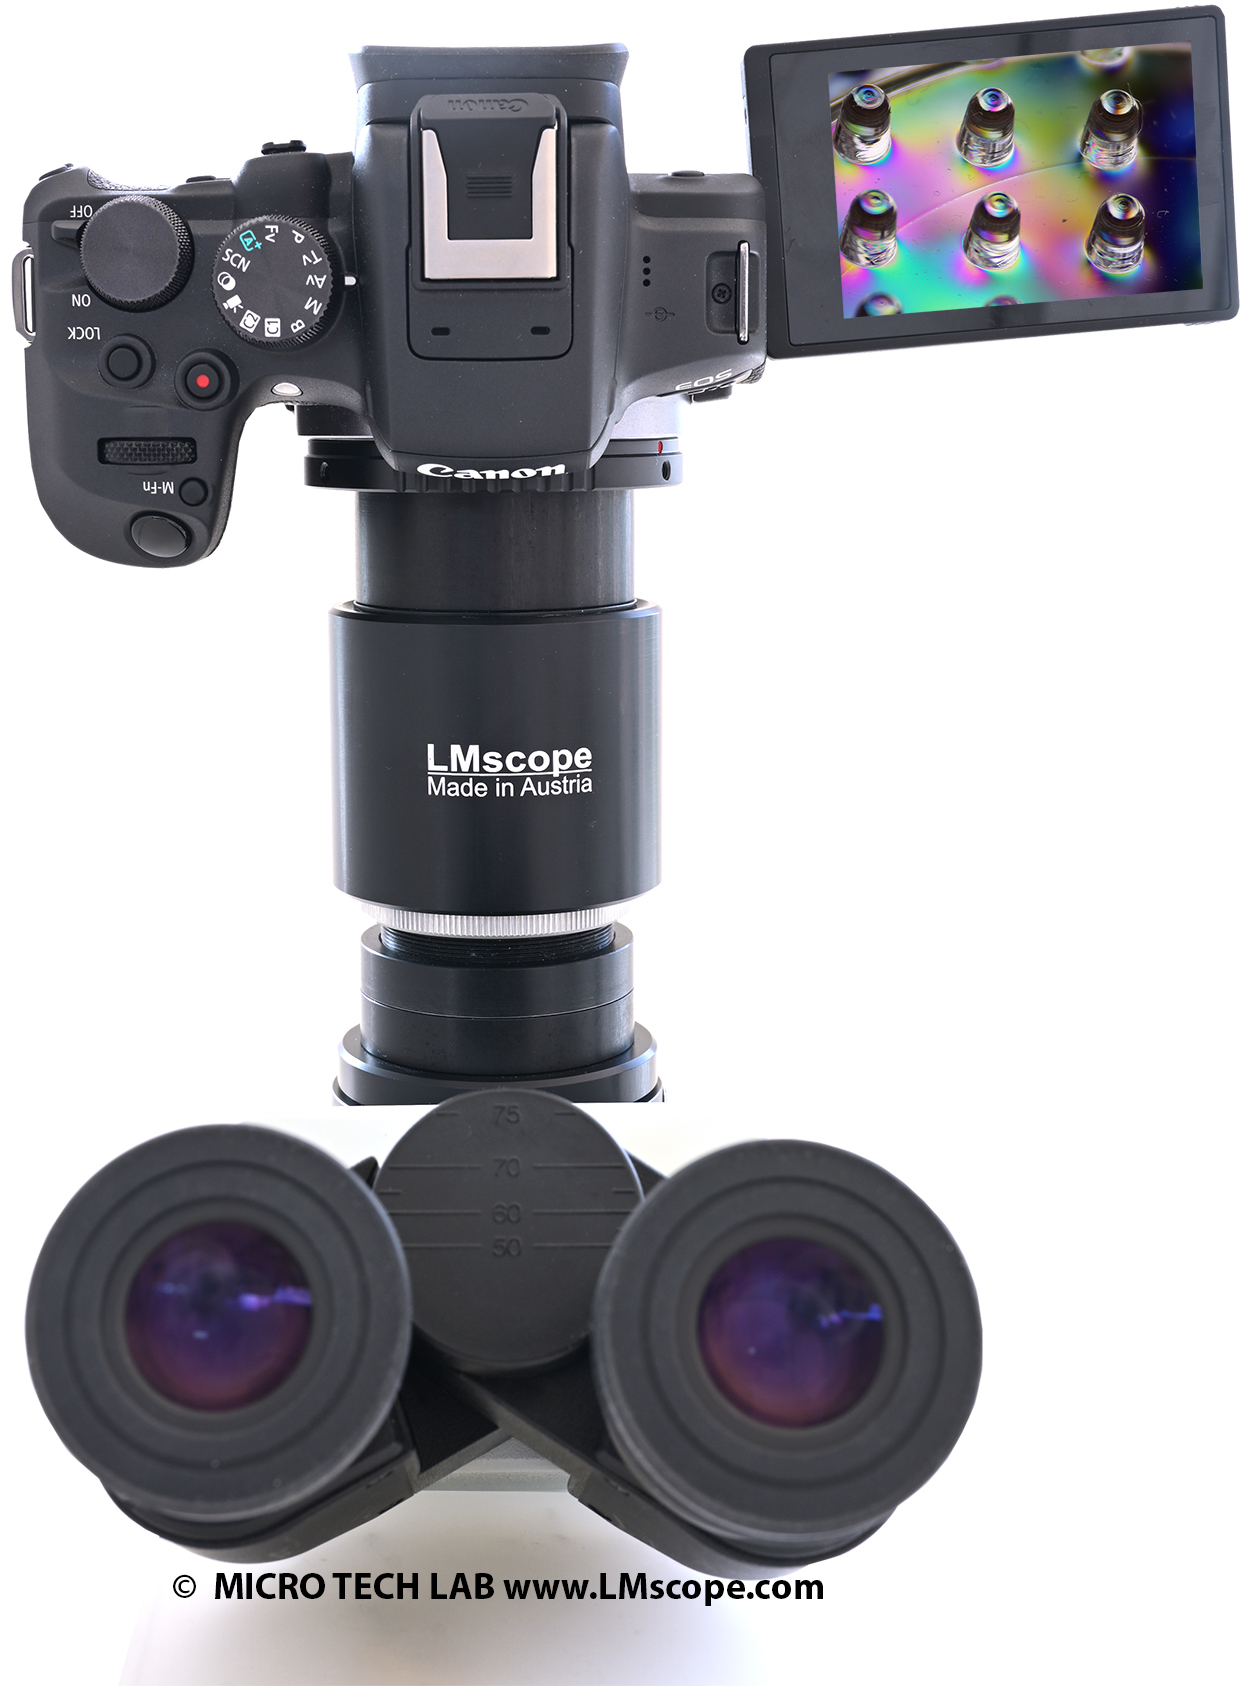 Adaptador de cmara de microscopio enfocable Direct Image para microscopios Olympus